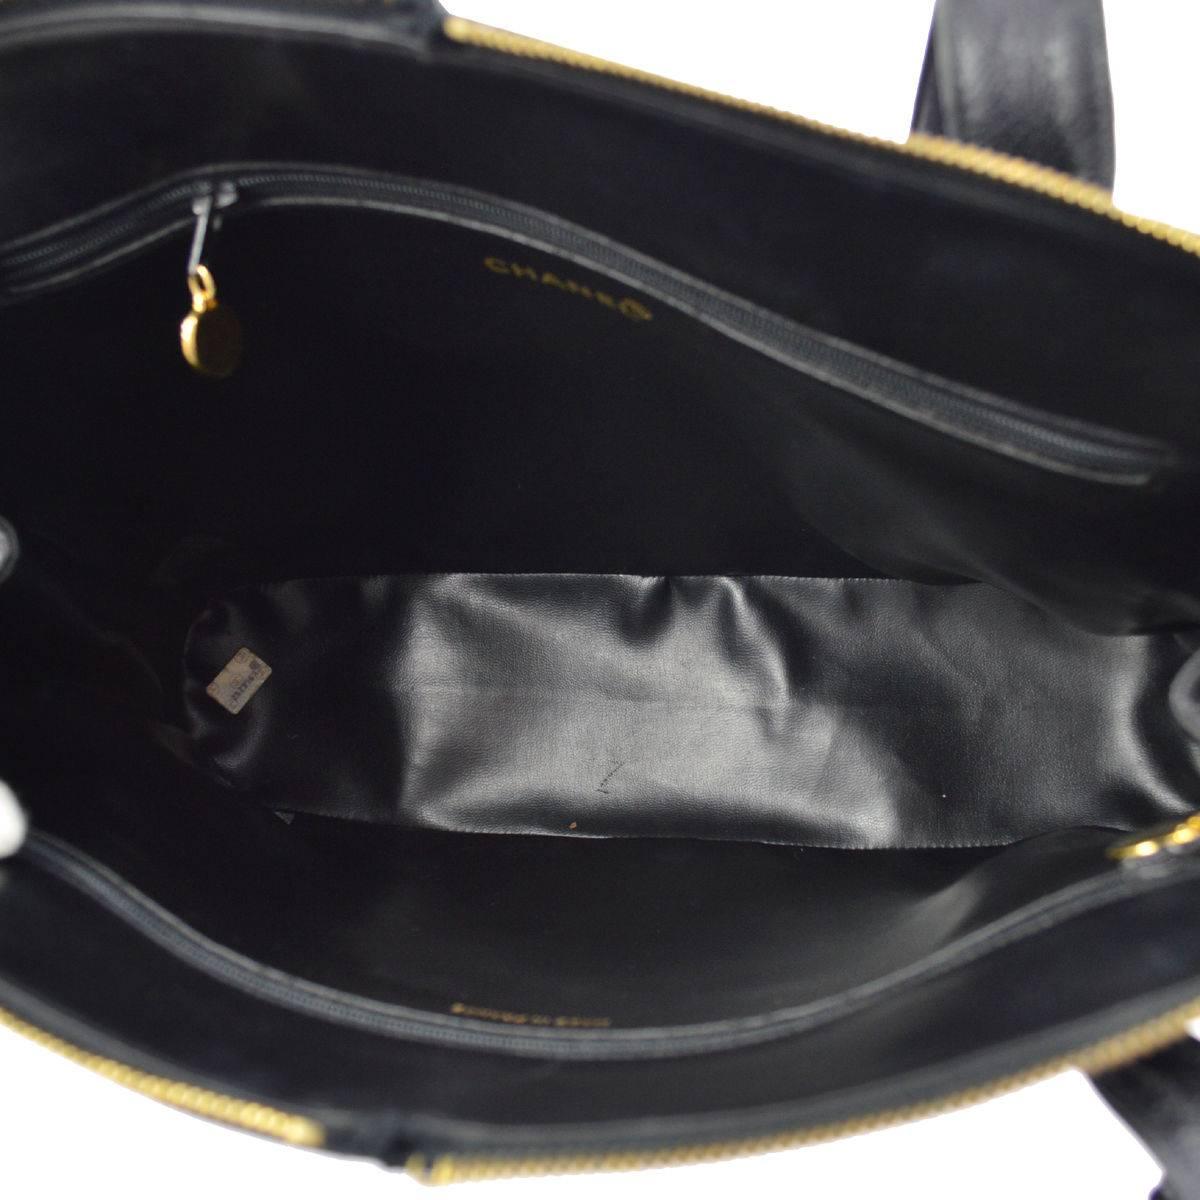 Chanel Black Leather Large Carryall Weekender Travel Tote Shoulder Bag 1